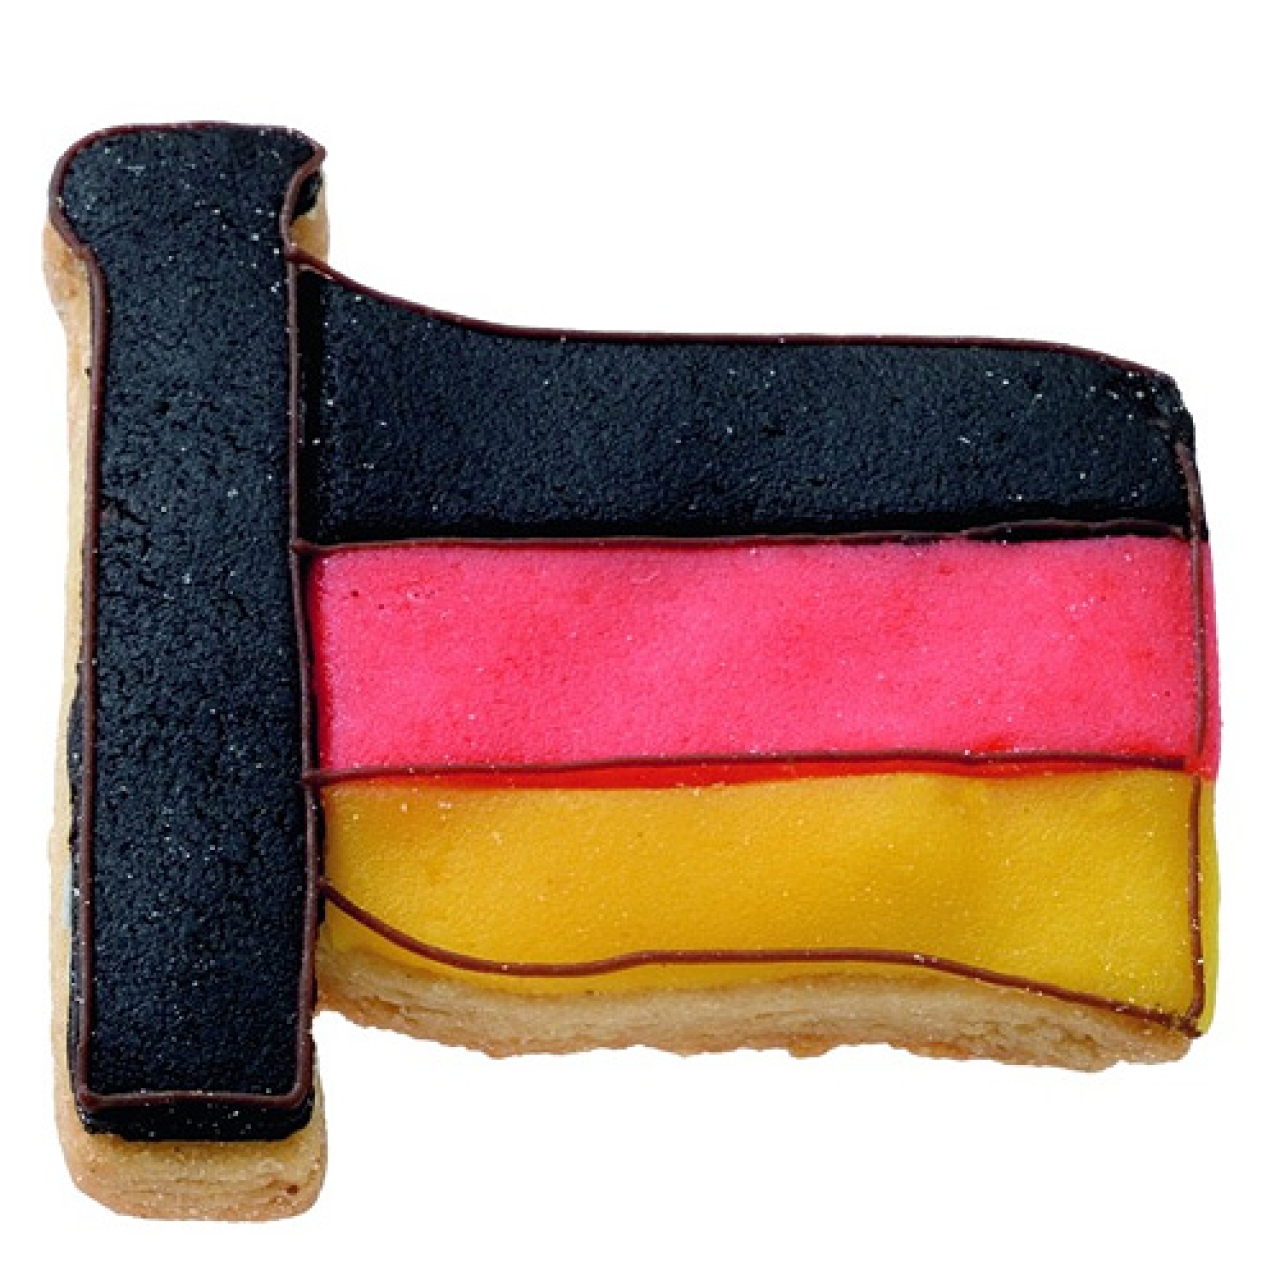 Ausstecher / Ausstechform "Flagge" für Kekse & Plätzchen